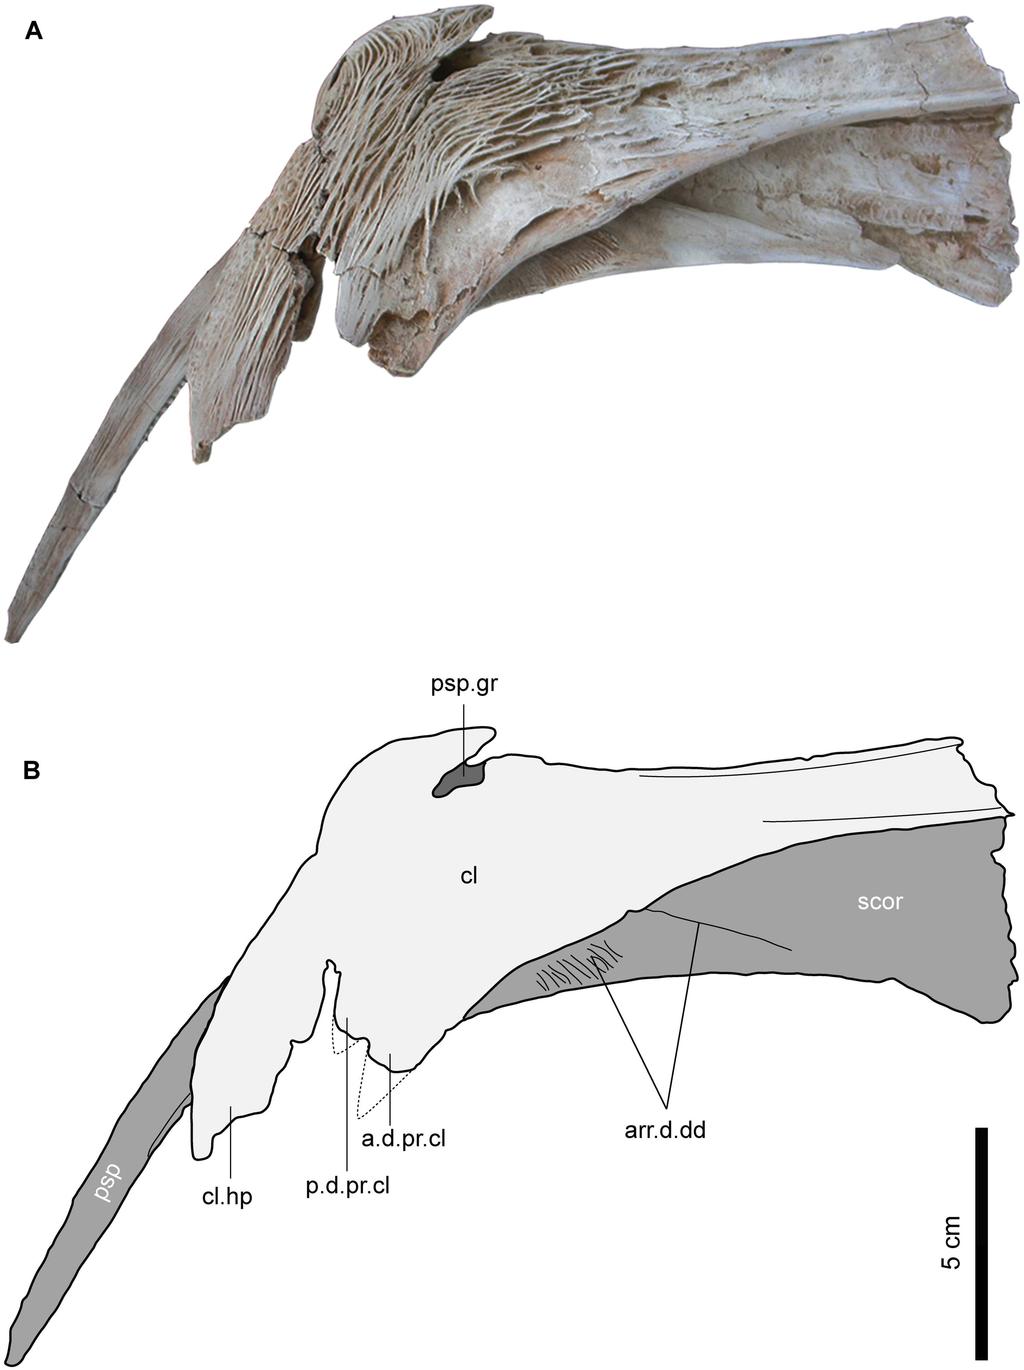 Fig 9. Left pectoral girdle of Qarmoutus hitanensis gen. et sp. nov.